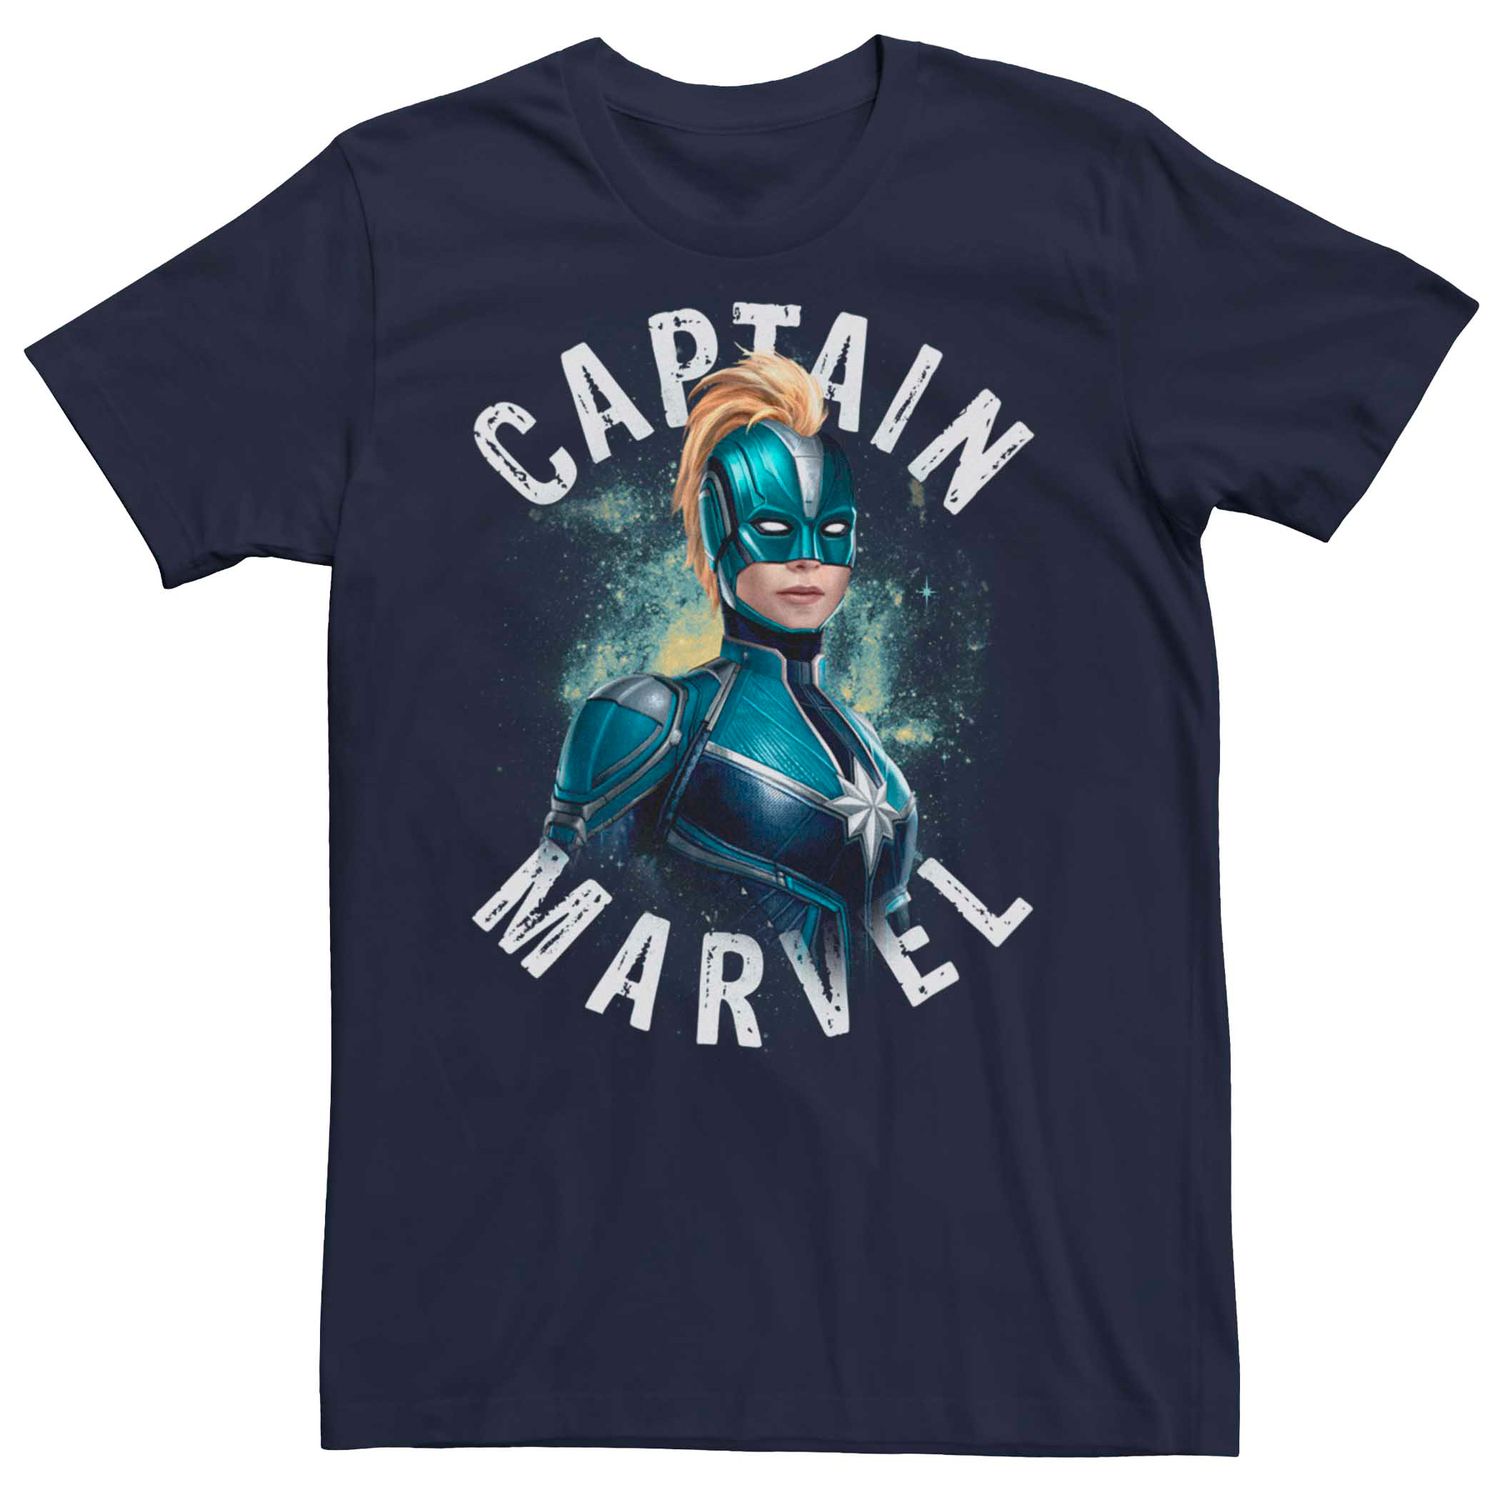 Мужская футболка в форме Капитана Марвел Кри с космическим портретом Licensed Character